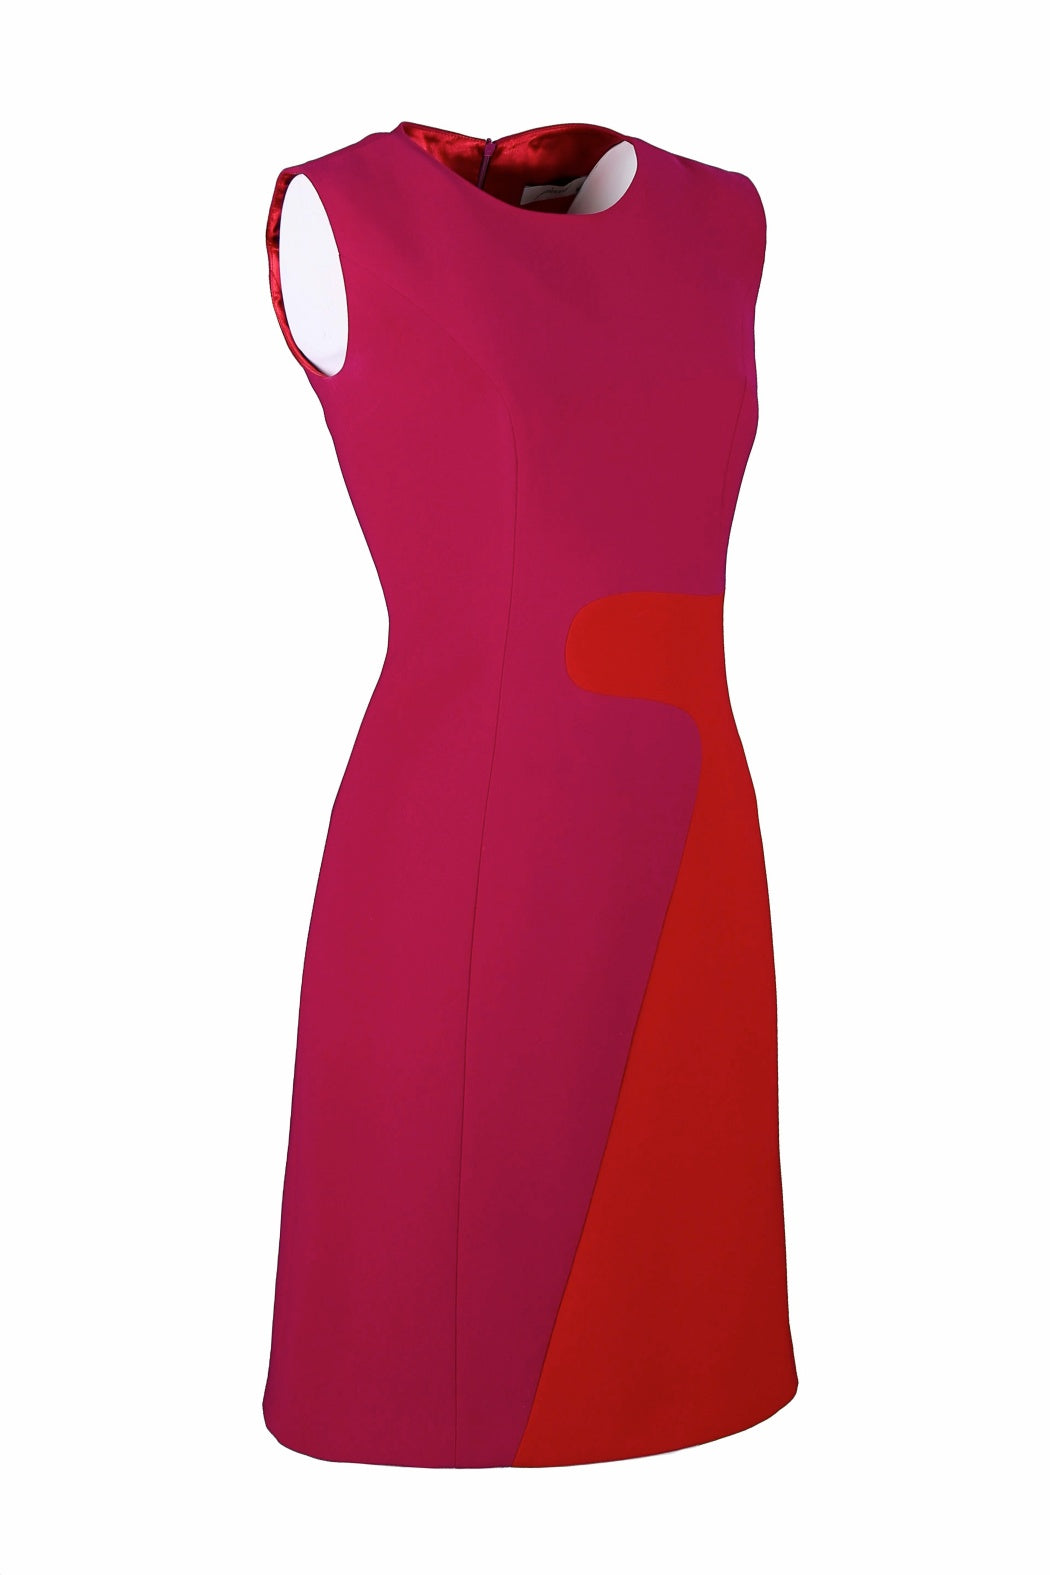 Block Pembe&Kırmızı Yuvarlak Yakalı Mini Krep Elbise